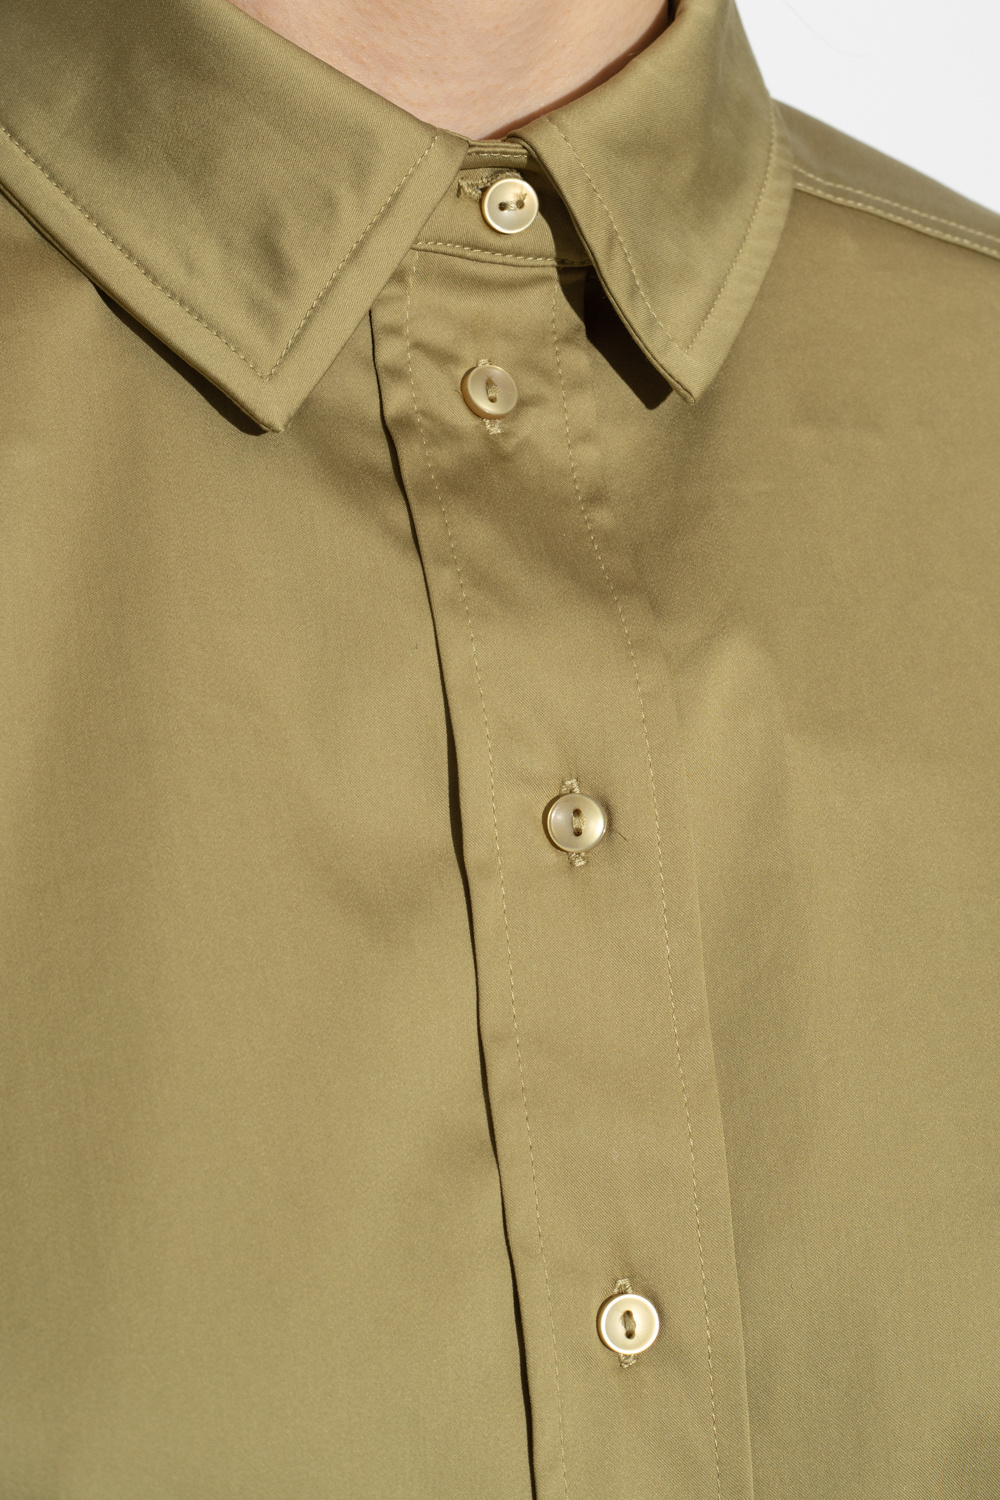 moncler genius 3 moncler grenoble arlaz jacket ‘Davina’ shirt